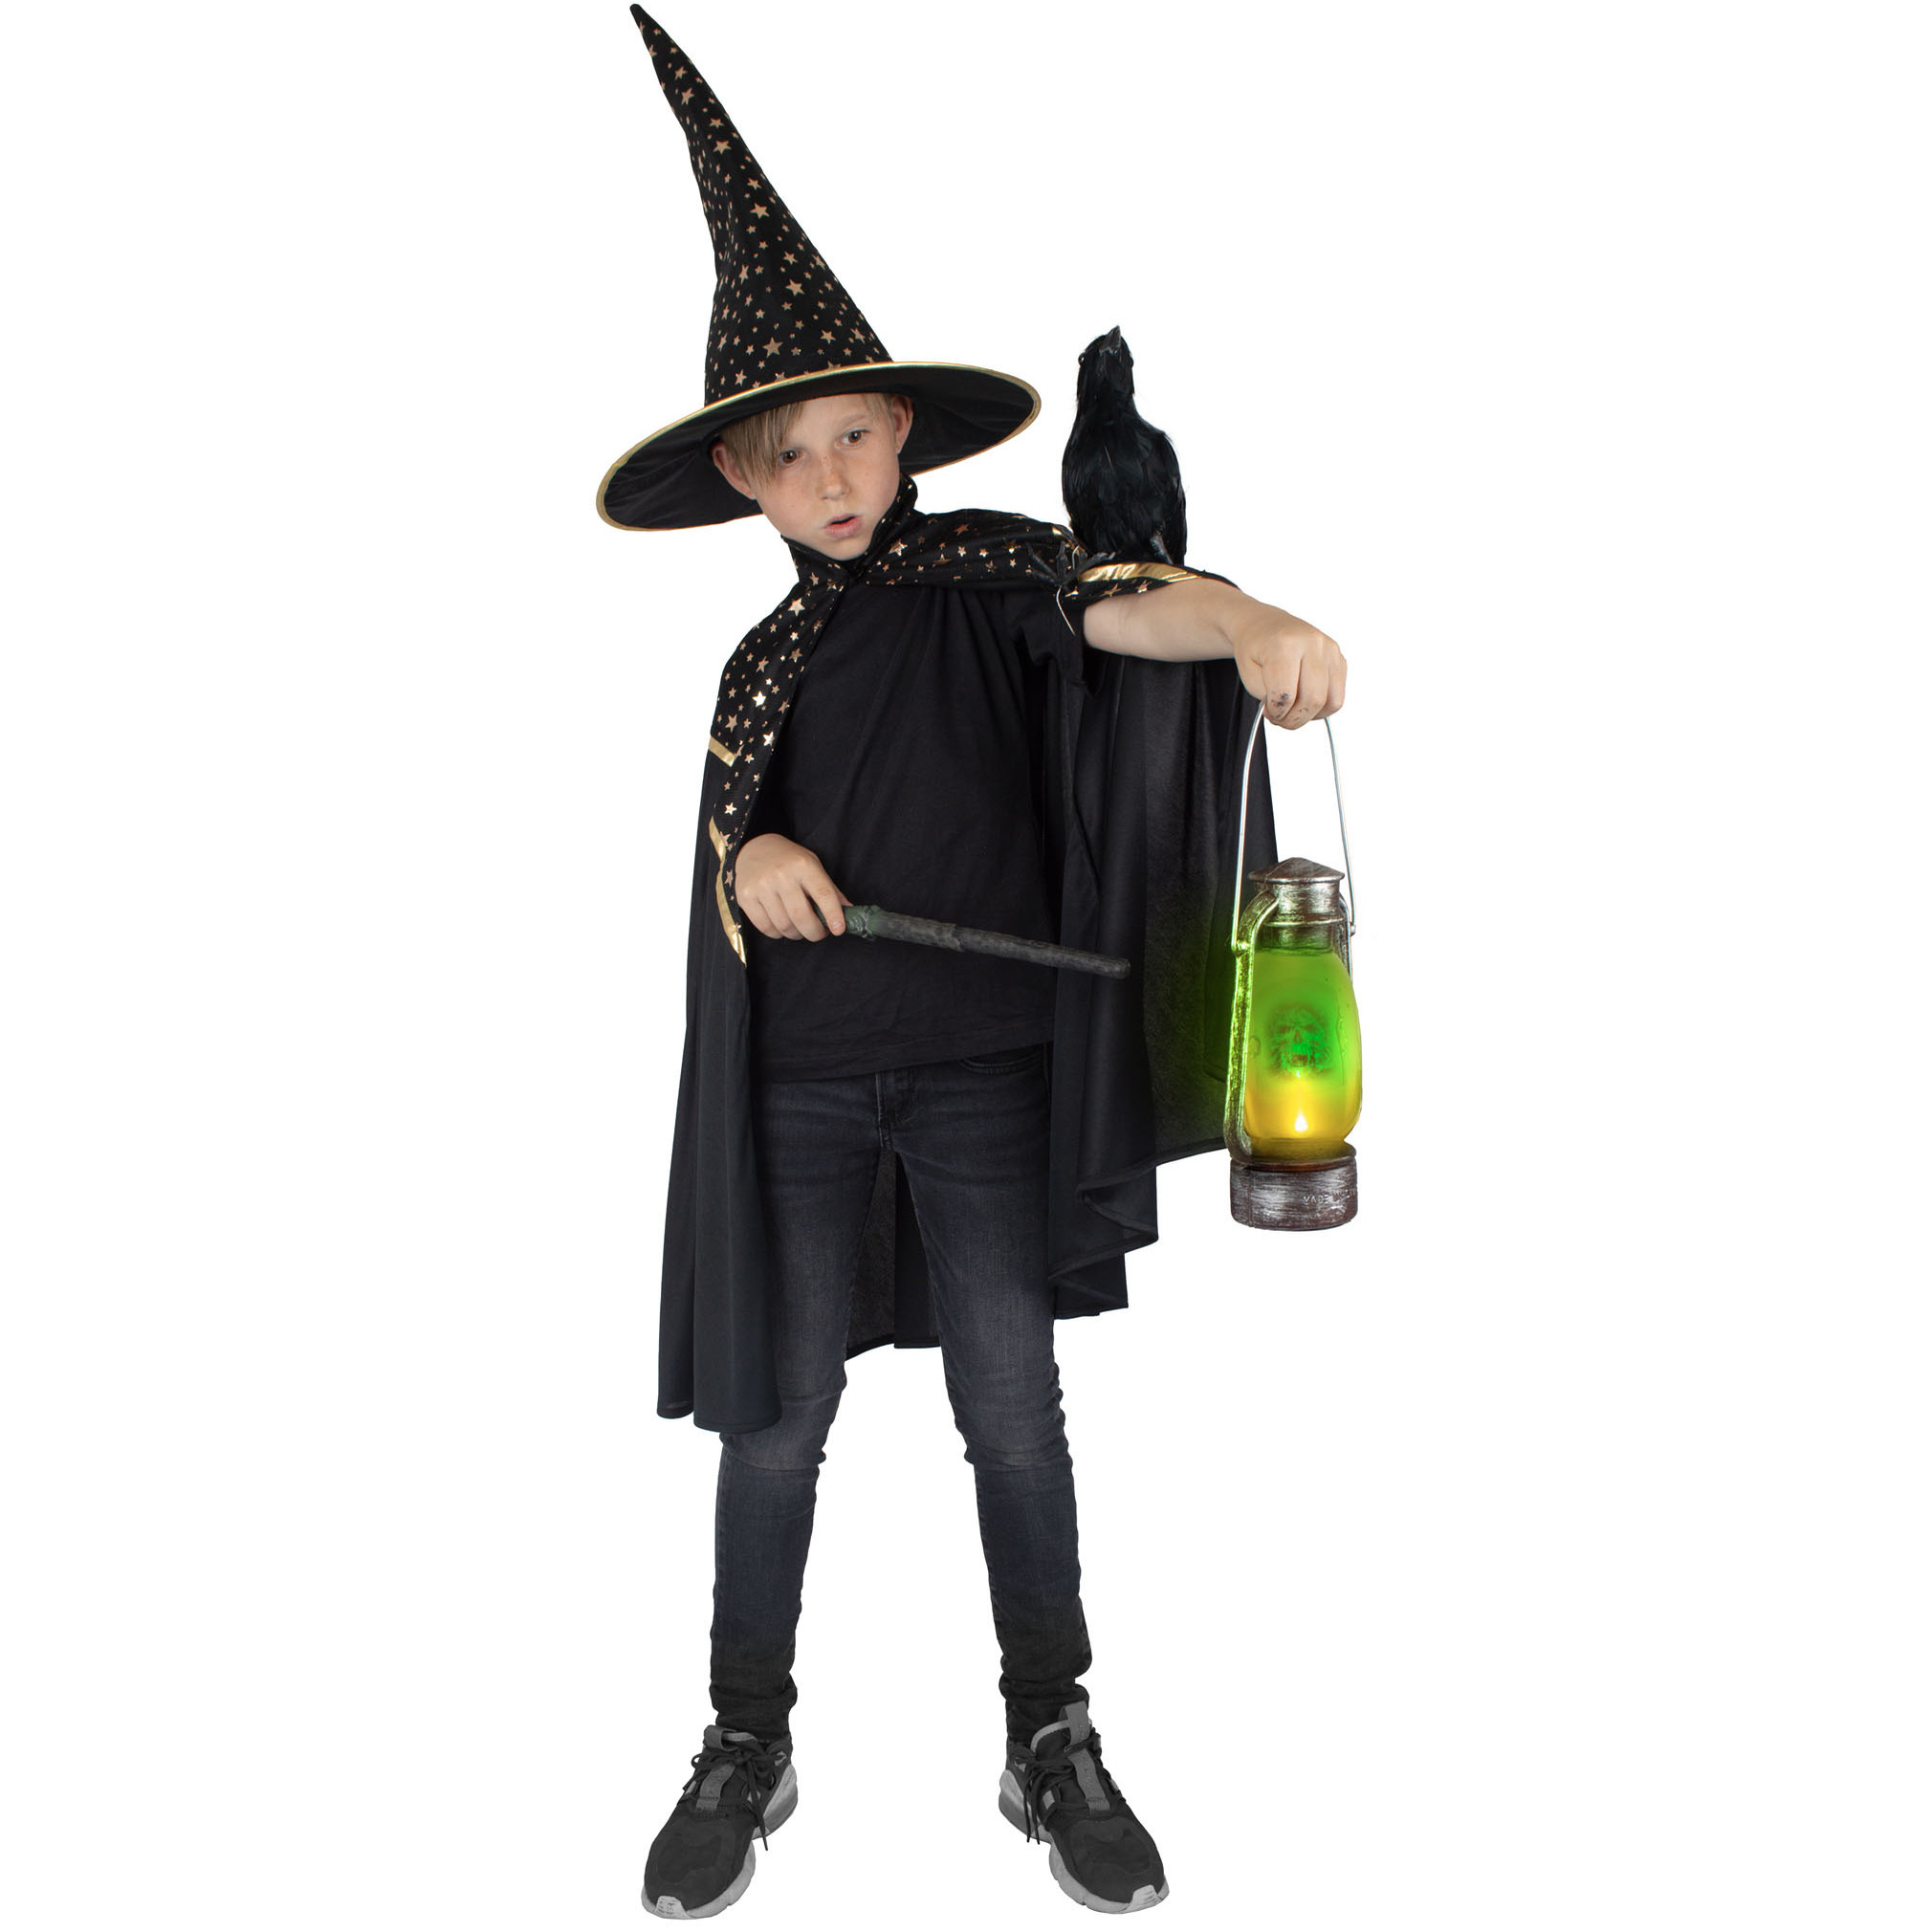 Funny Fashion Tovenaars verkleed cape/hoed - kinderen - zwart met sterren - Carnaval kostuum